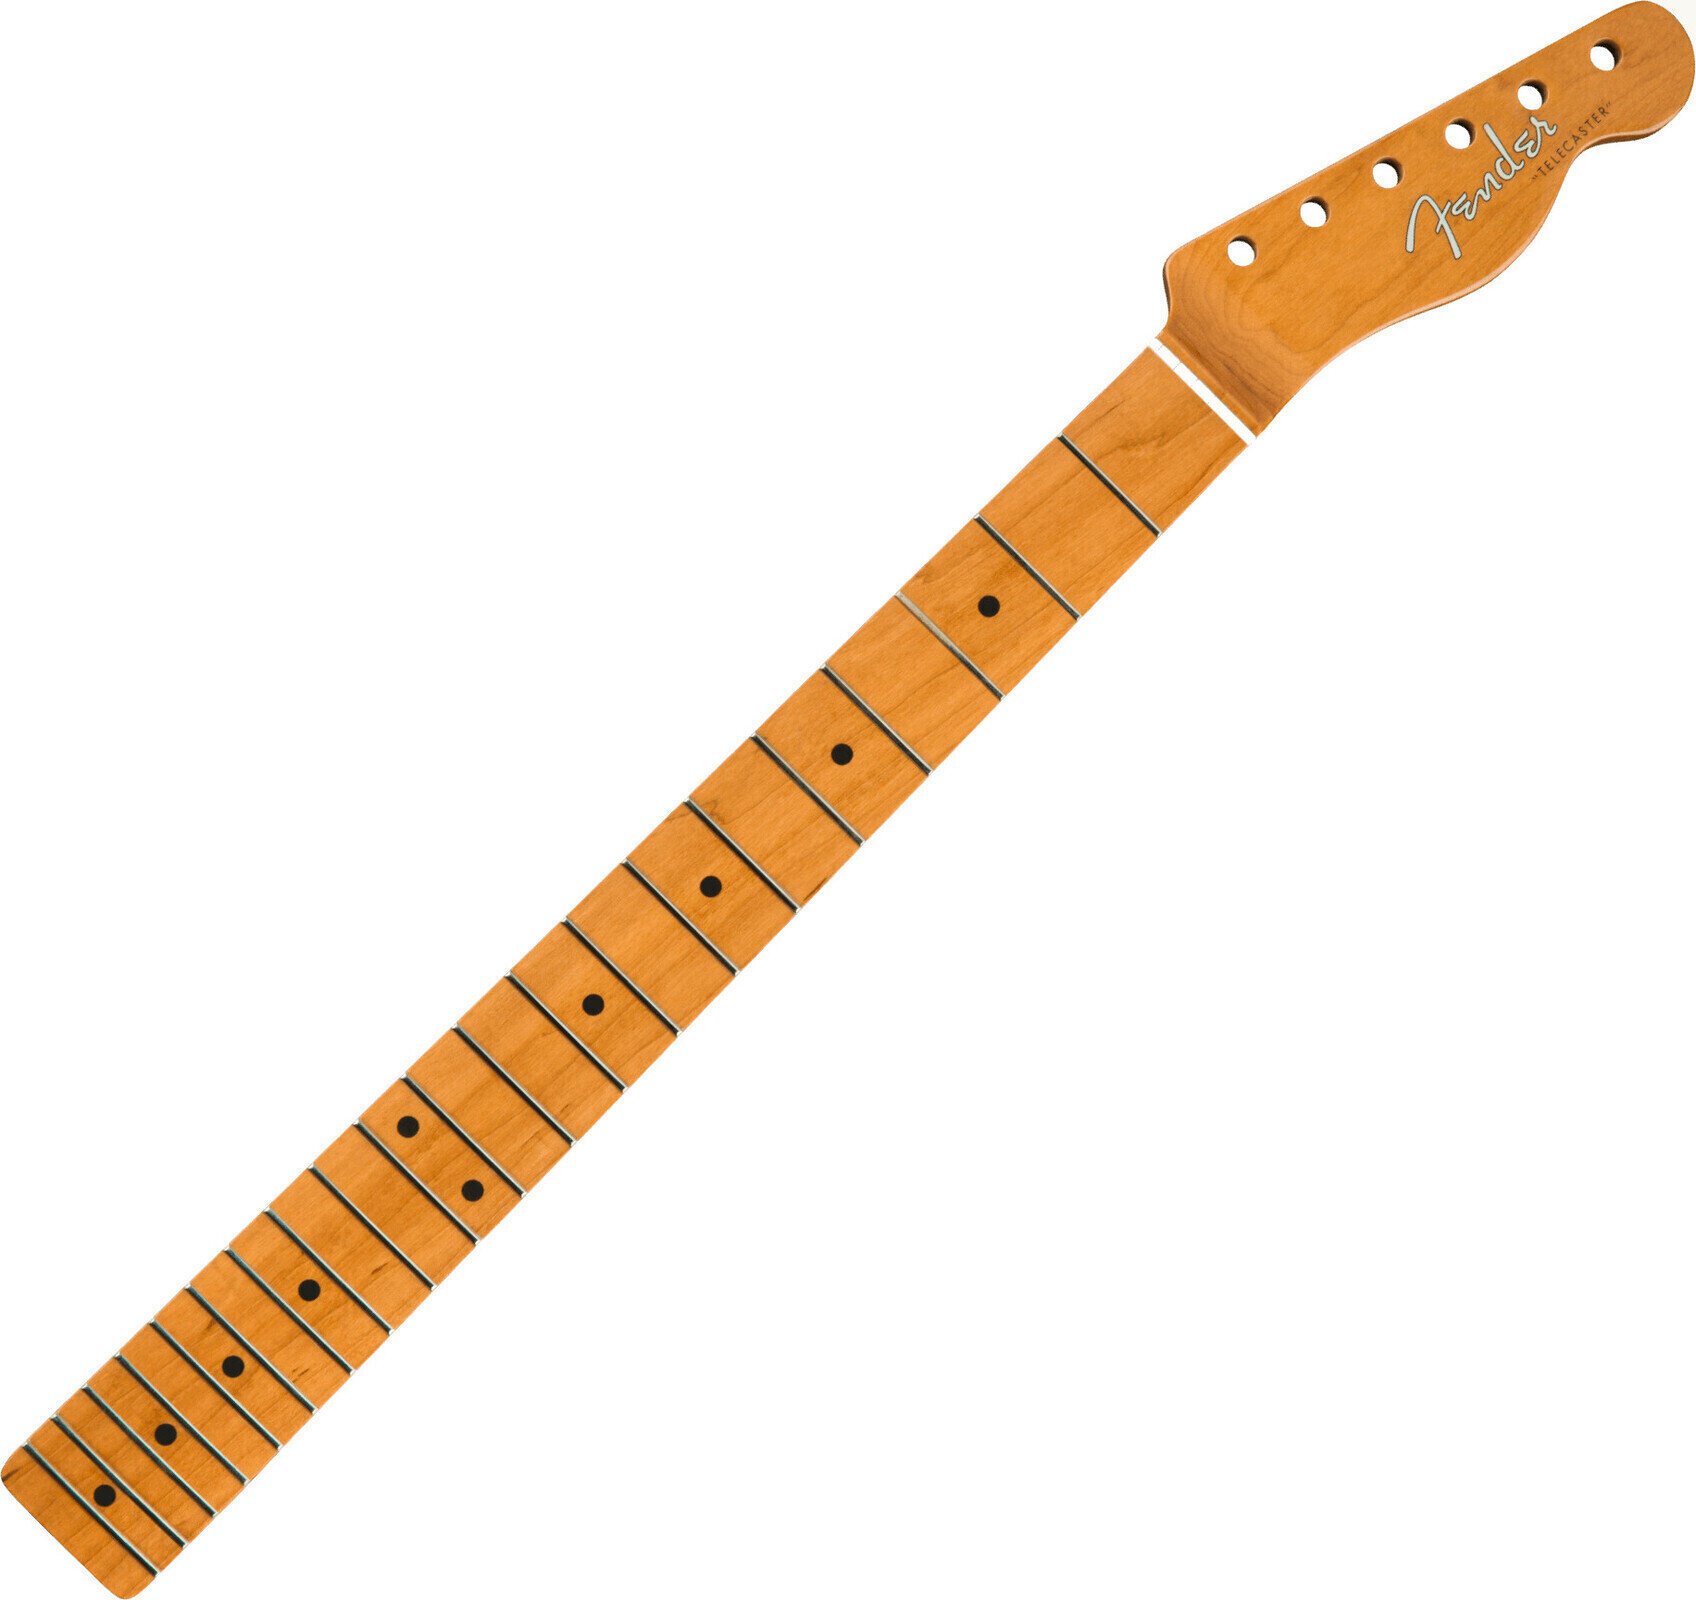 Hals für Gitarre Fender Roasted Maple Vintera Mod 60s 21 Bergahorn (Roasted Maple) Hals für Gitarre